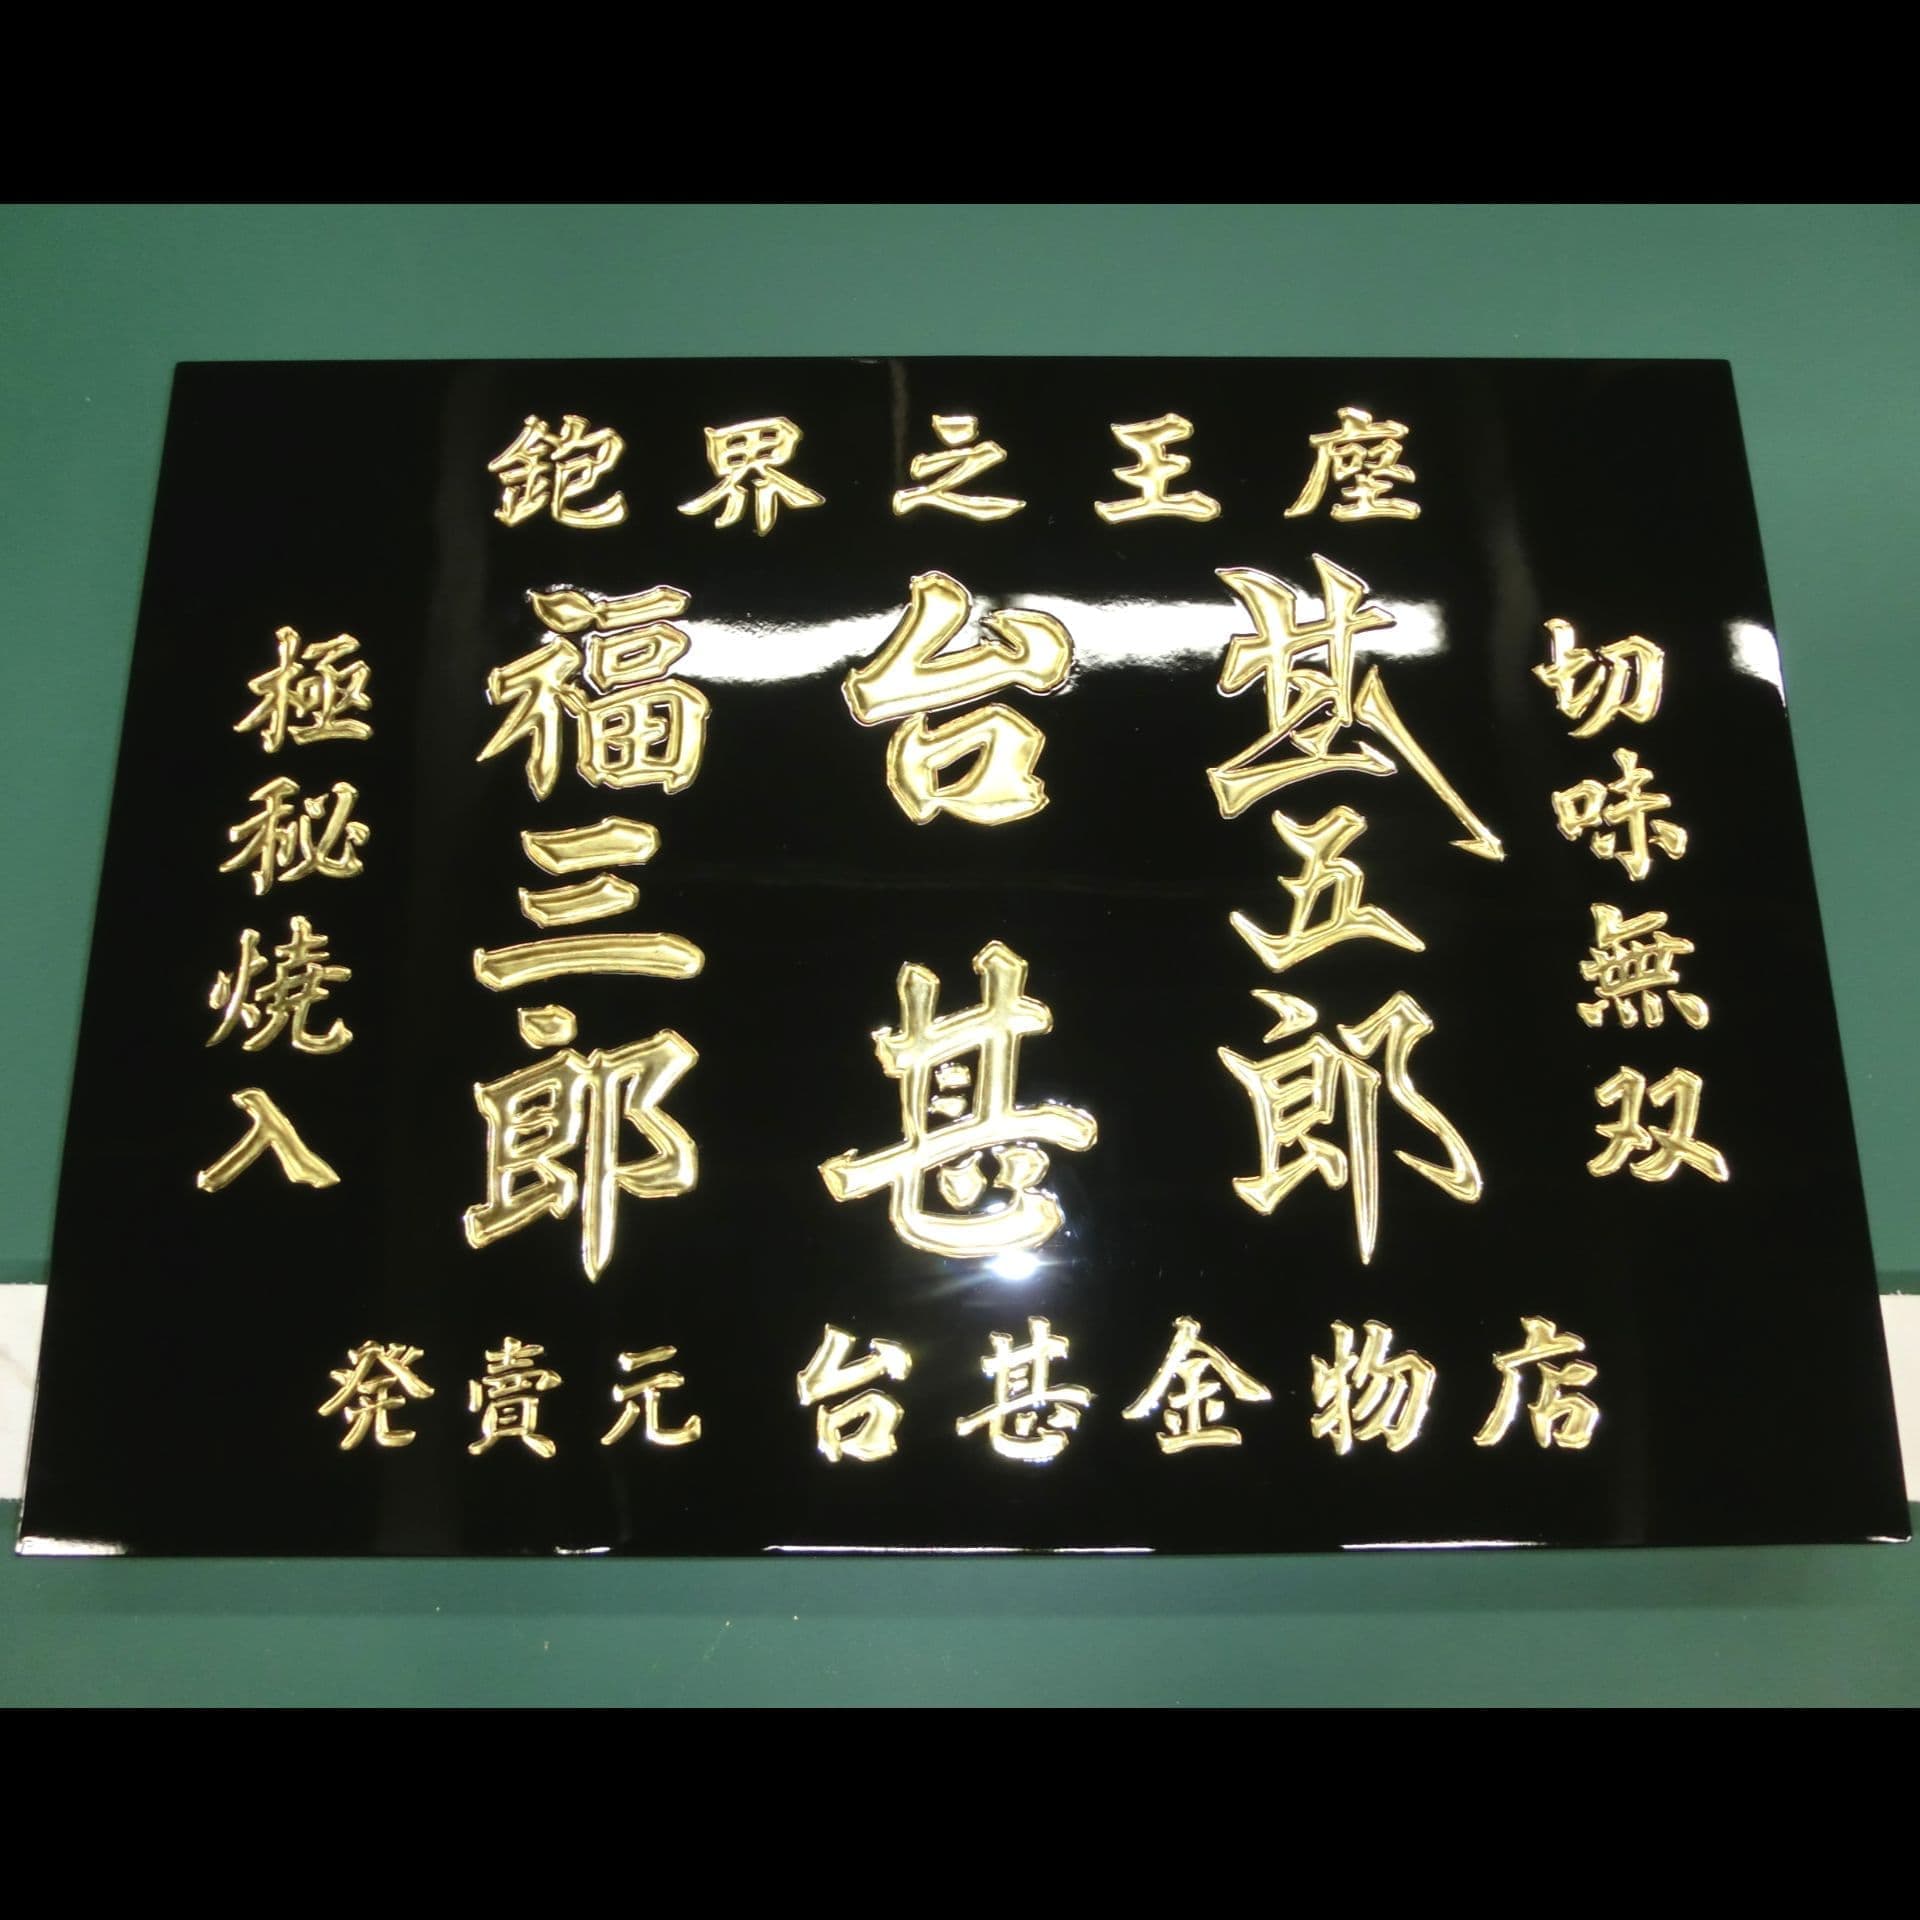 昭和の看板の修復、黒塗りの板に金文字が映える